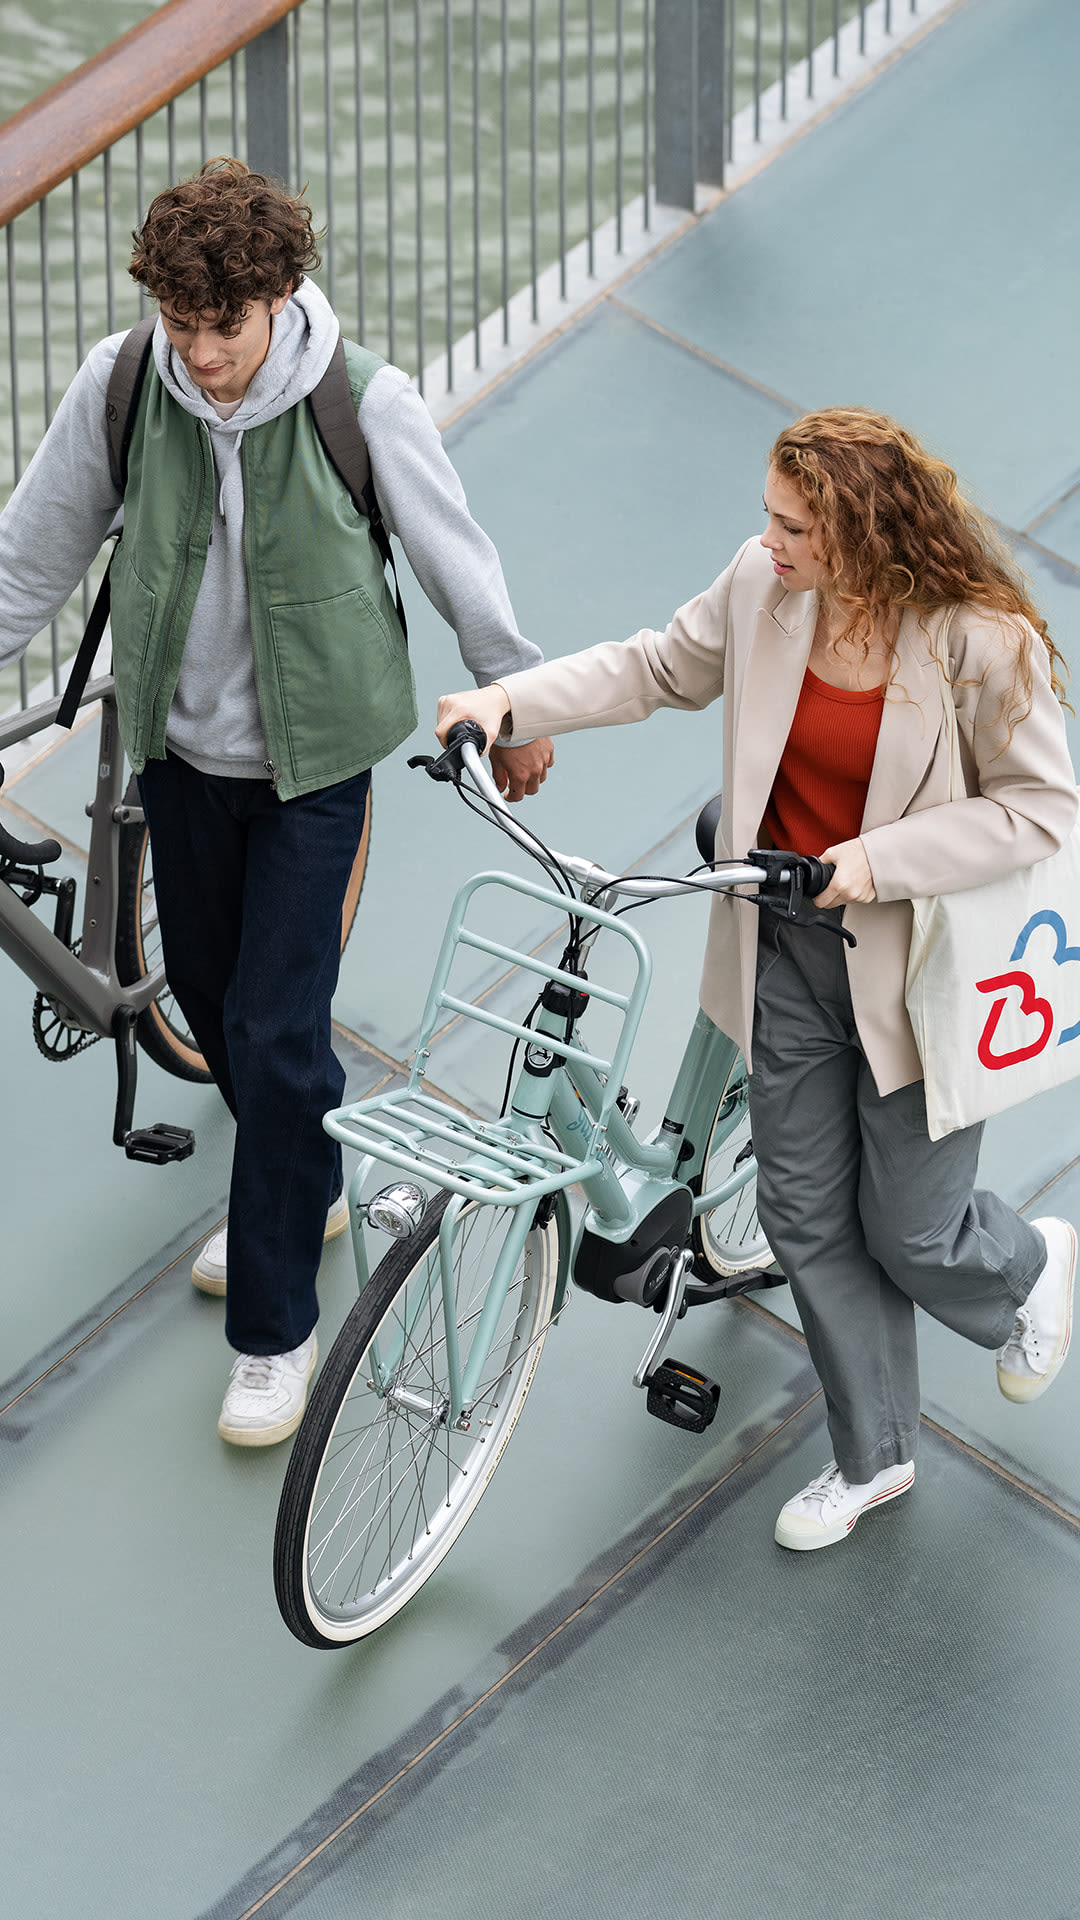 Attraktive Bike-Leasing-Pakete für alle ✓E-Bikes, Rennräder & Lastenräder ✓schnell & unkompliziert ✓private Nutzung. Jetzt Wunschrad leasen!